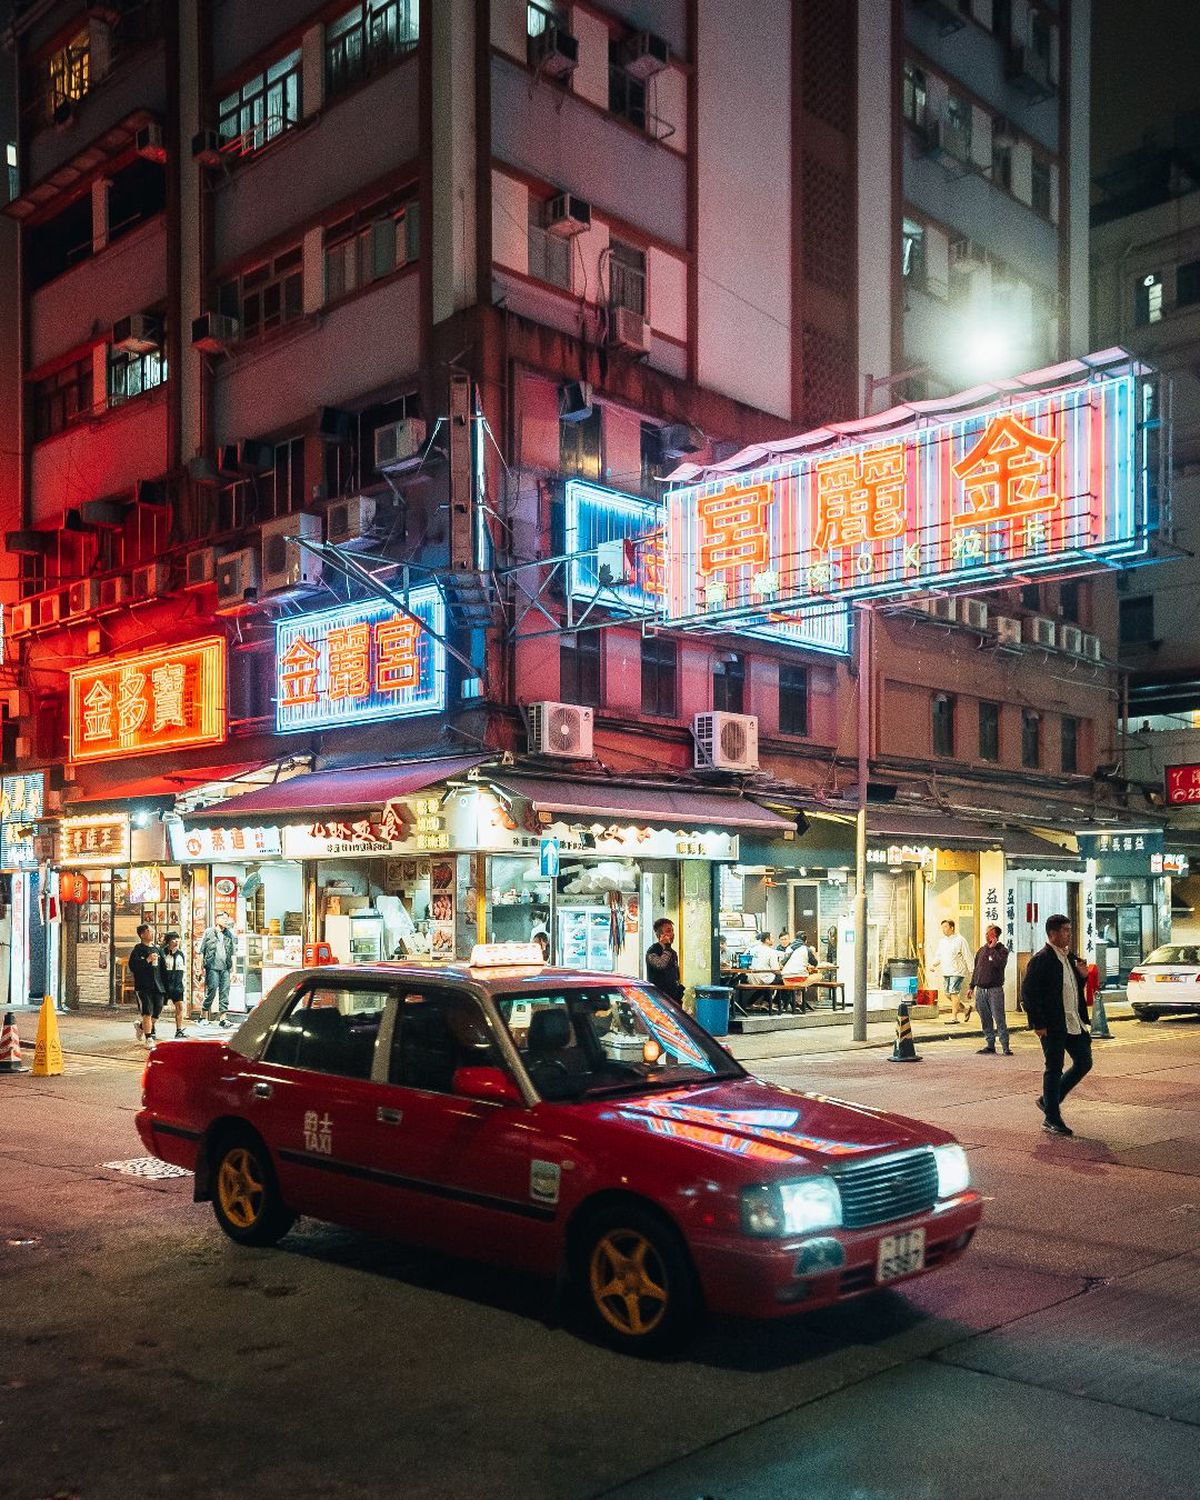 夜晚的城市街道 一辆红色汽车停在有霓虹灯标志的建筑物前